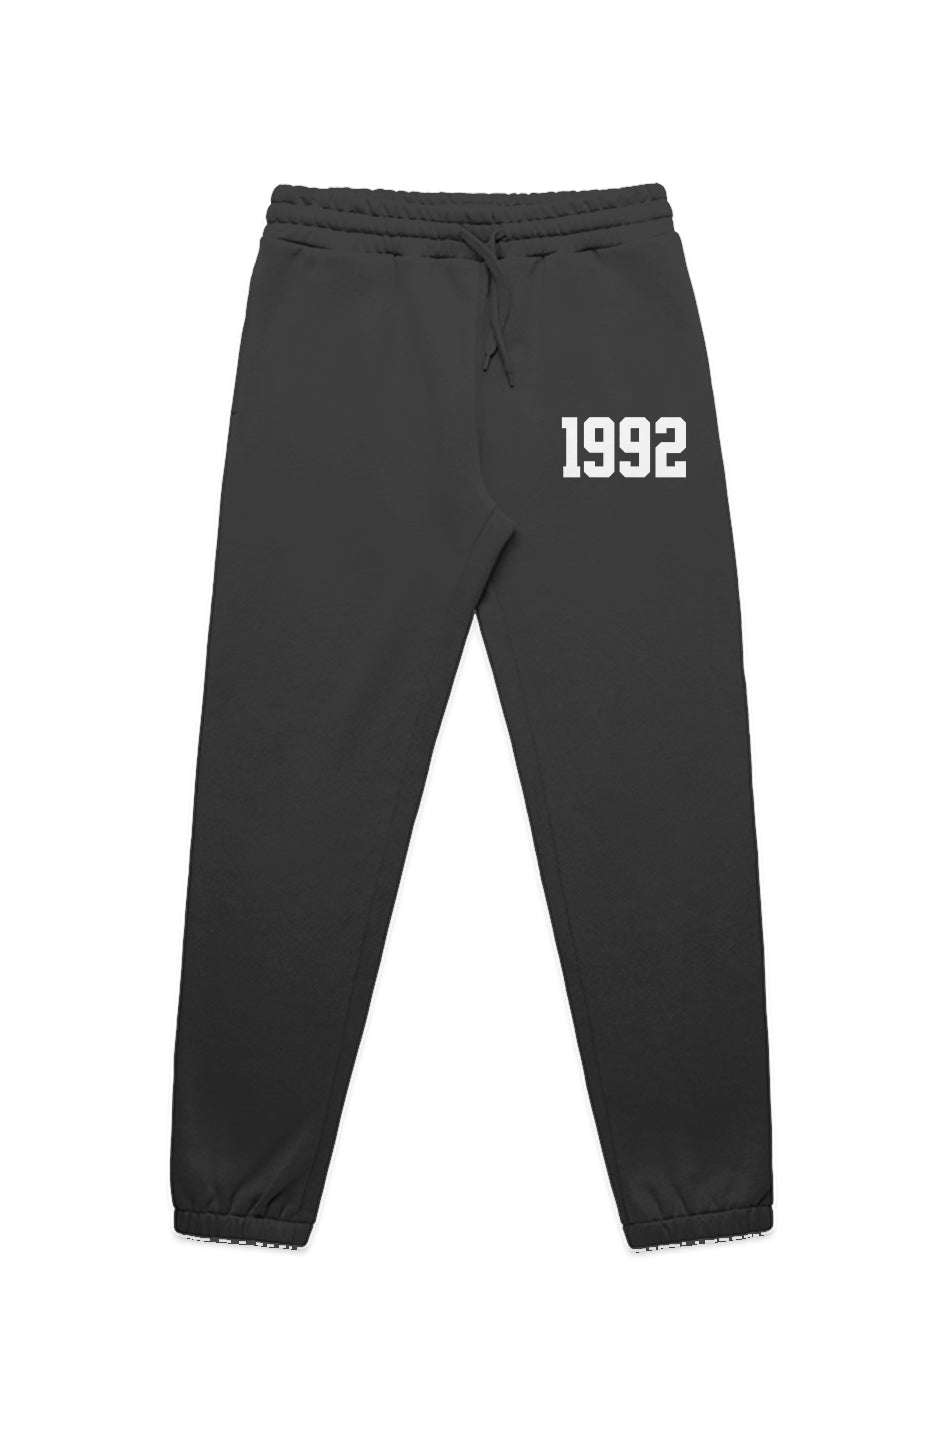 1992 track pants